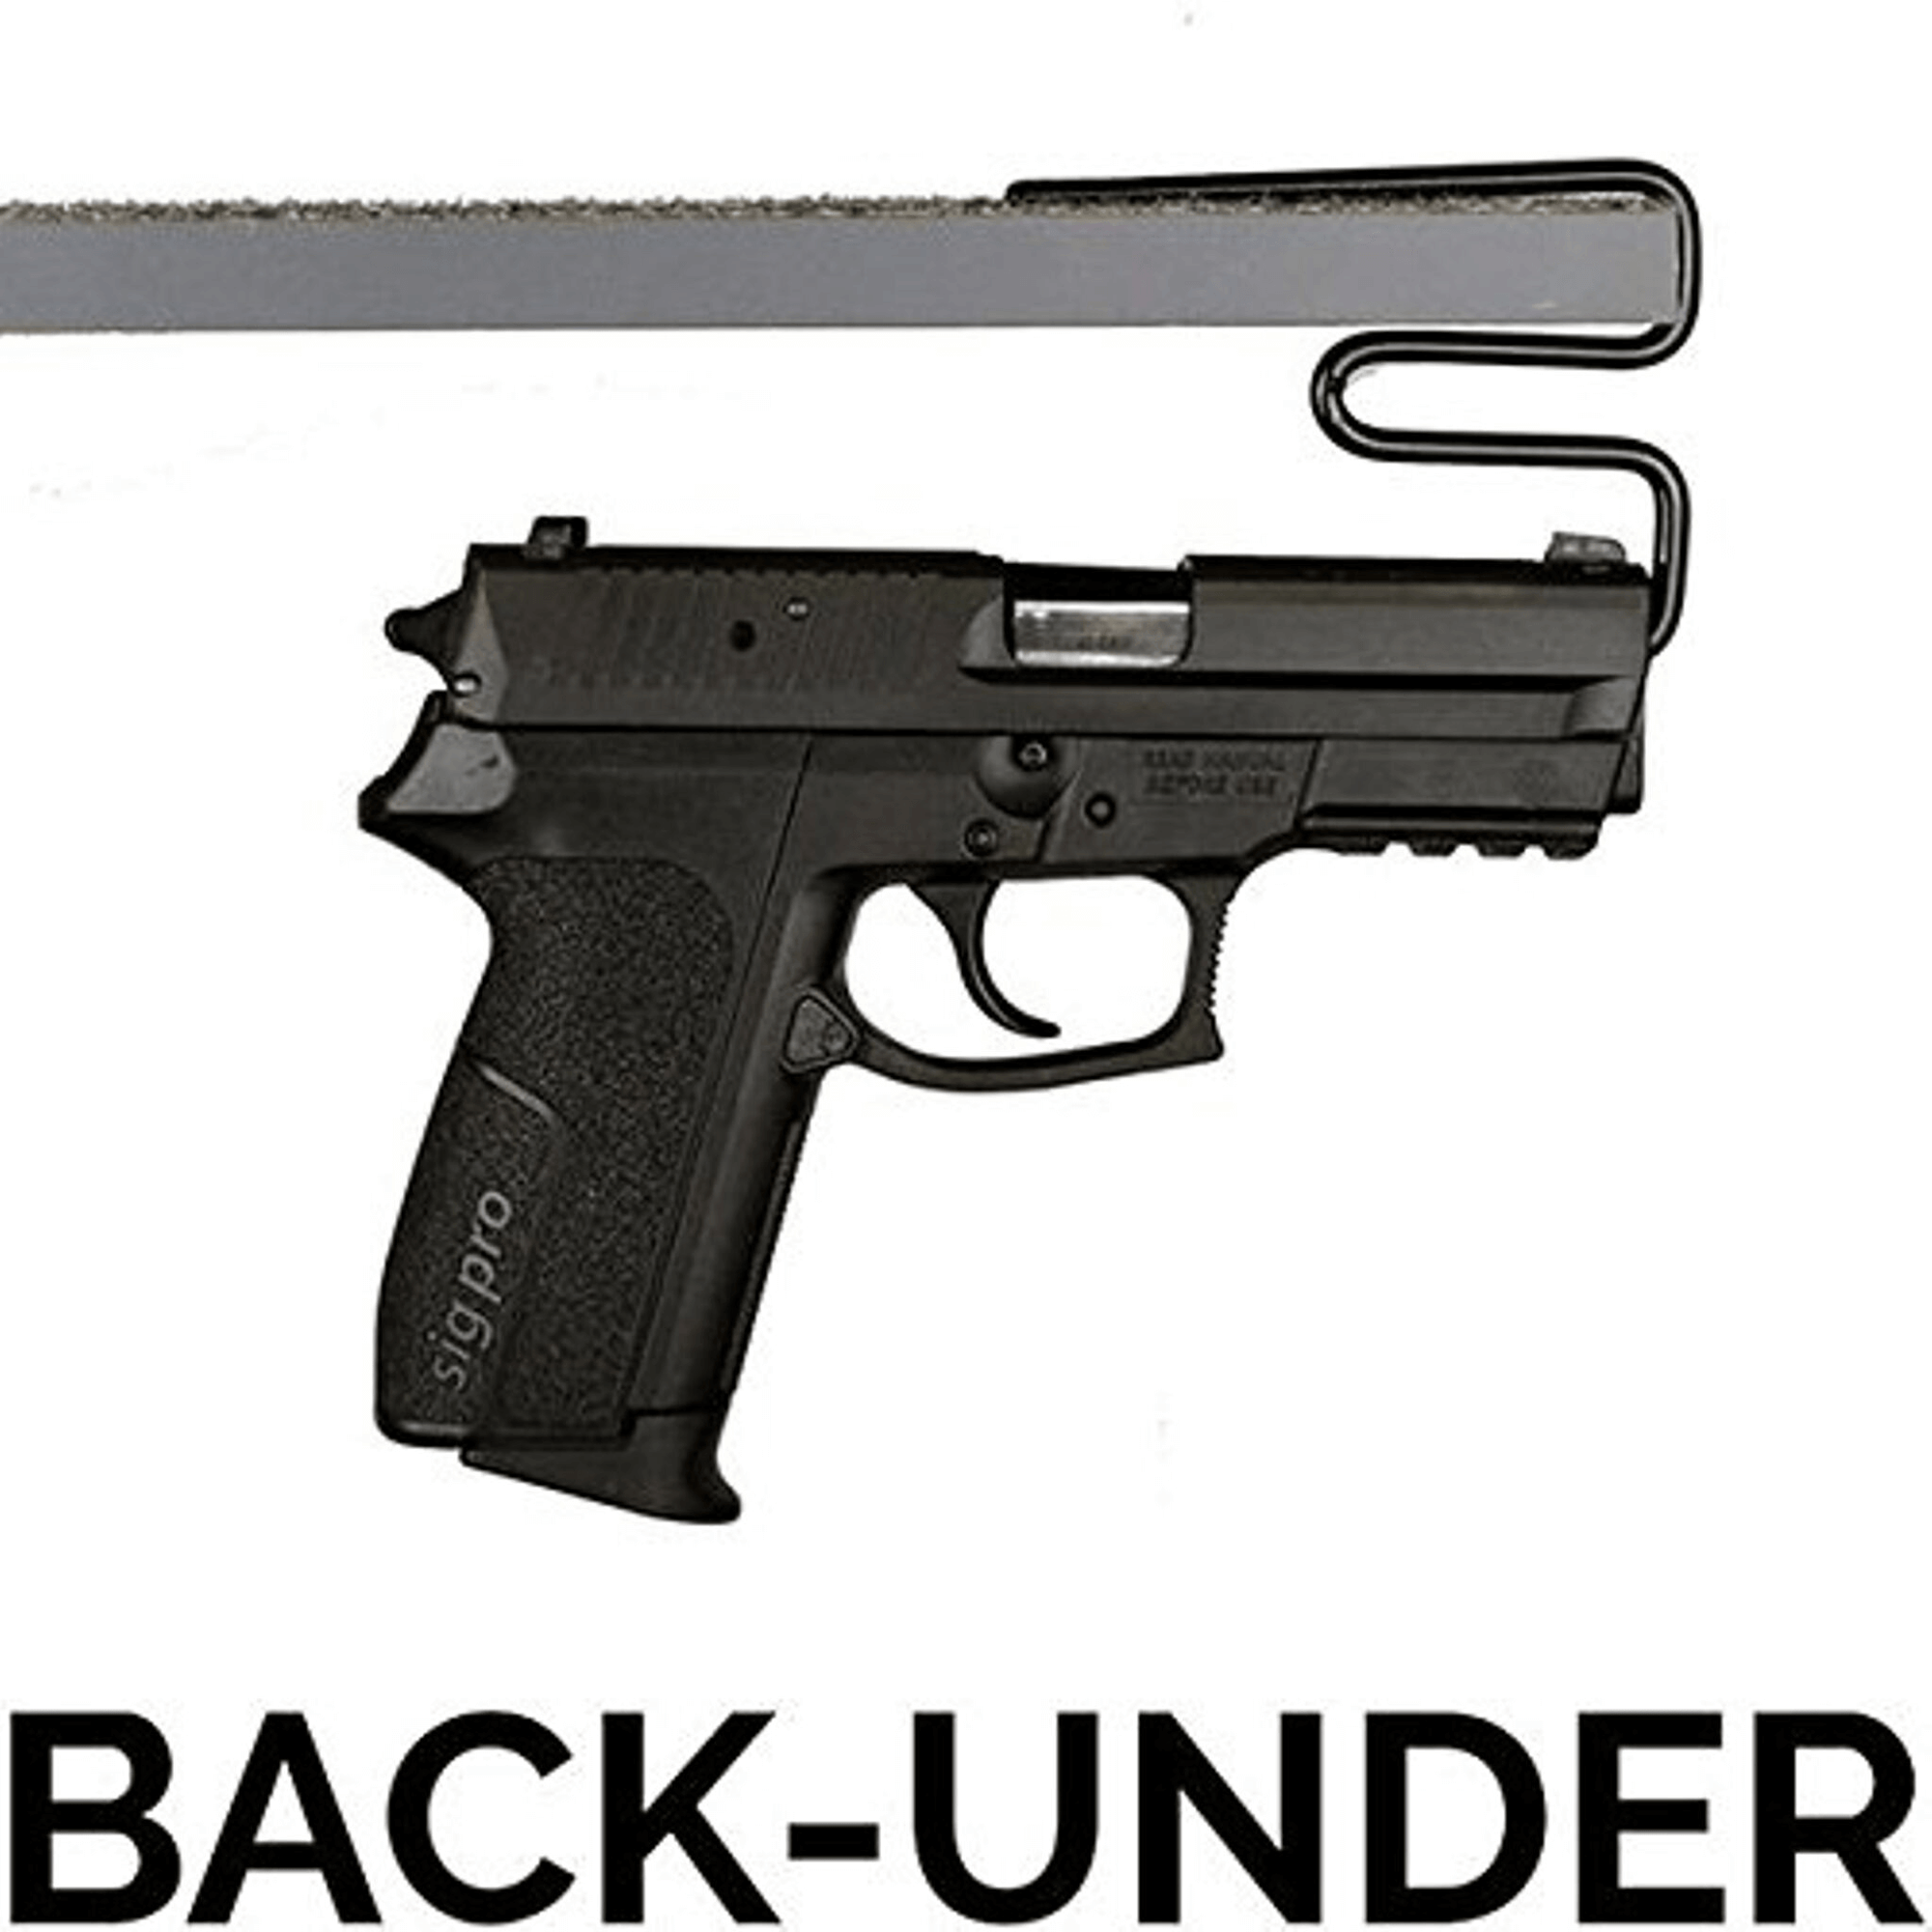 Accessory - Storage - Handgun Hanger - Over-Under - 2 Pack 